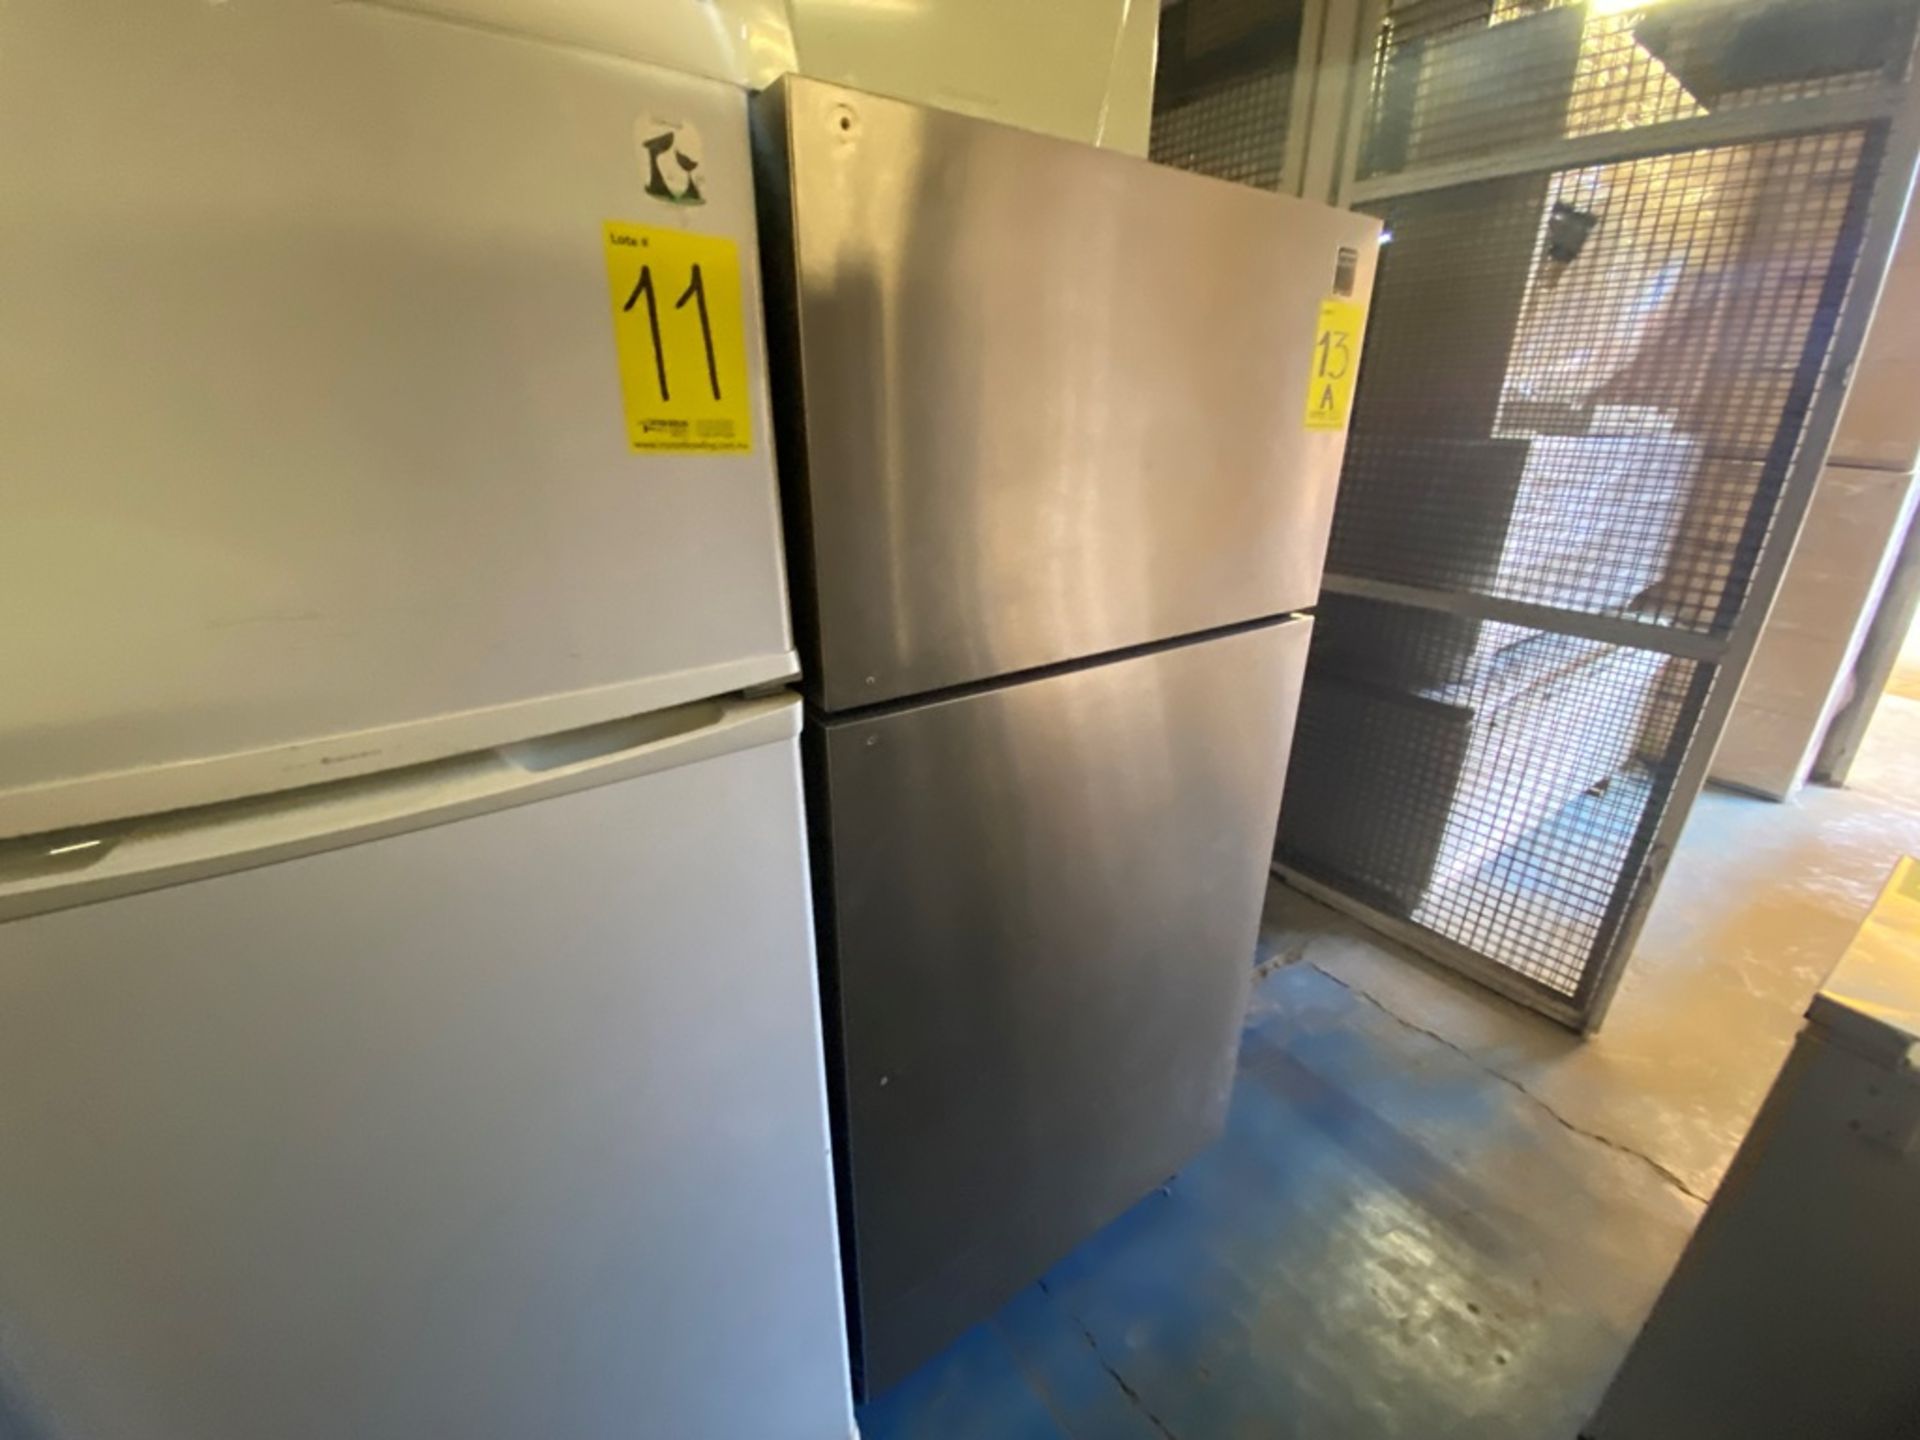 Lote Conformado por 1 Refrigerador marca Frigidaire color gris, Modelo FRT22TSEB5, Serie LA8440700, - Image 6 of 11